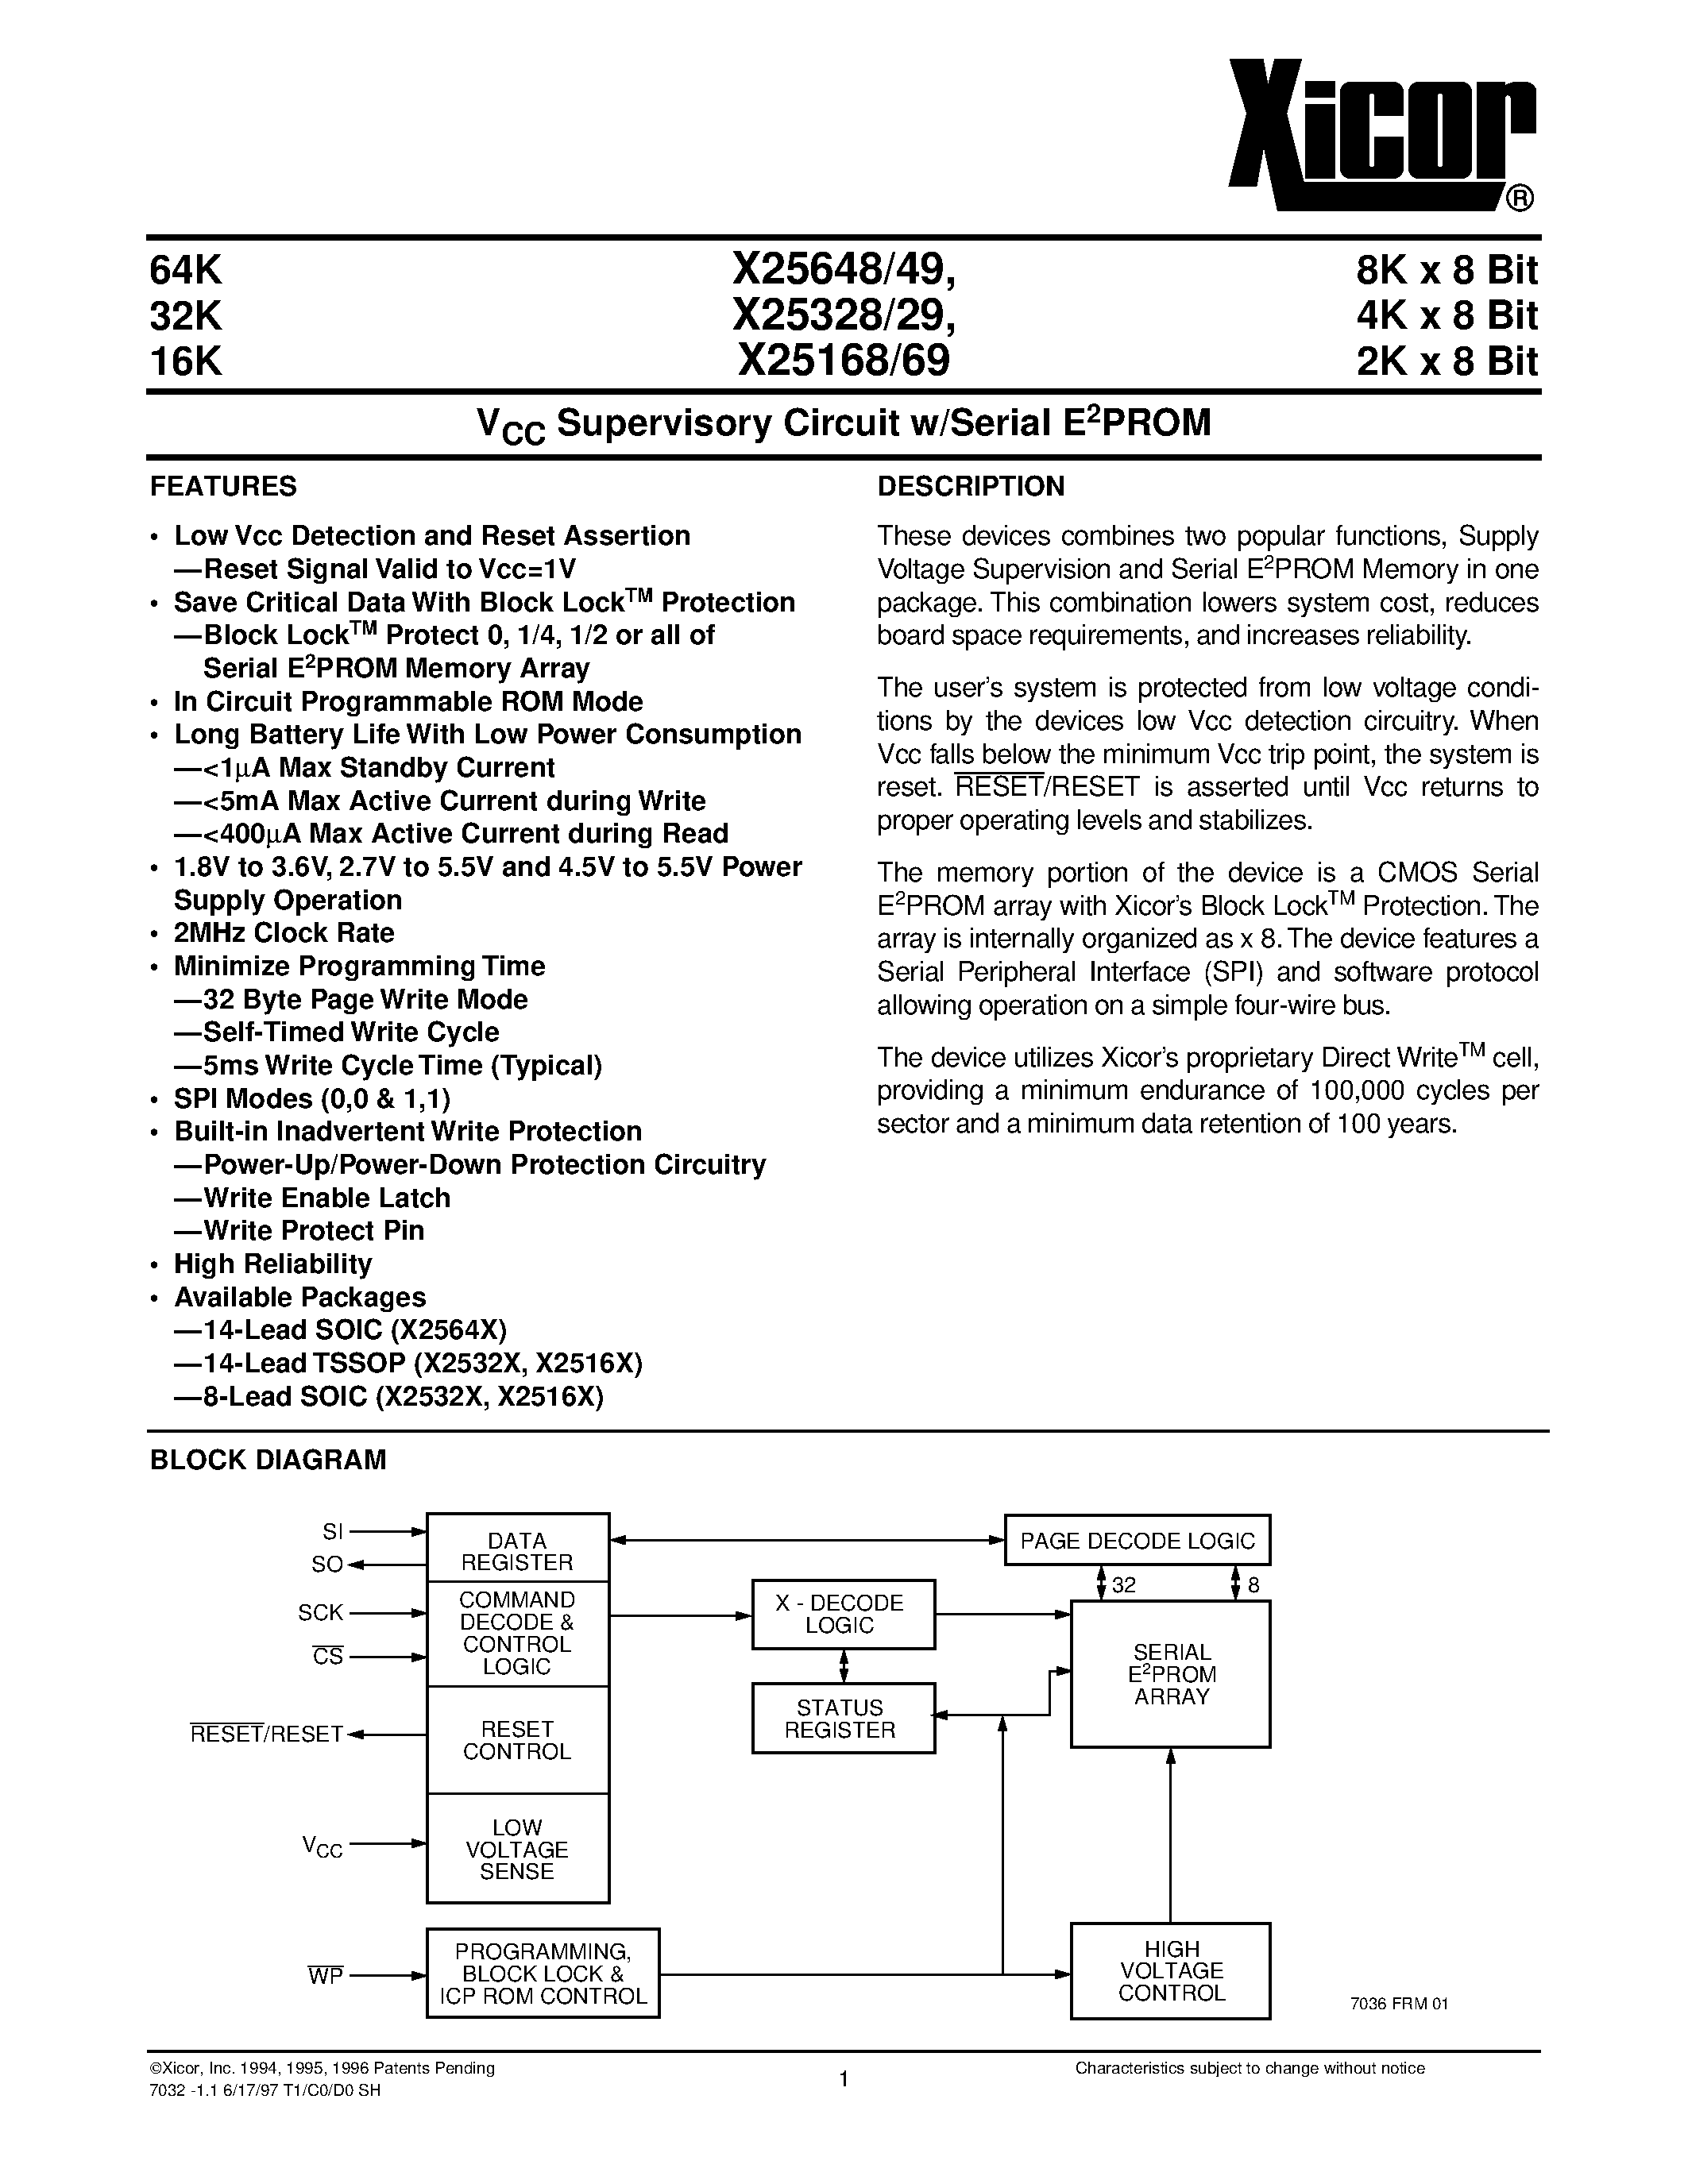 Даташит X25648S8-1.8 - V CC Supervisory Circuit w/Serial E 2 PROM страница 1